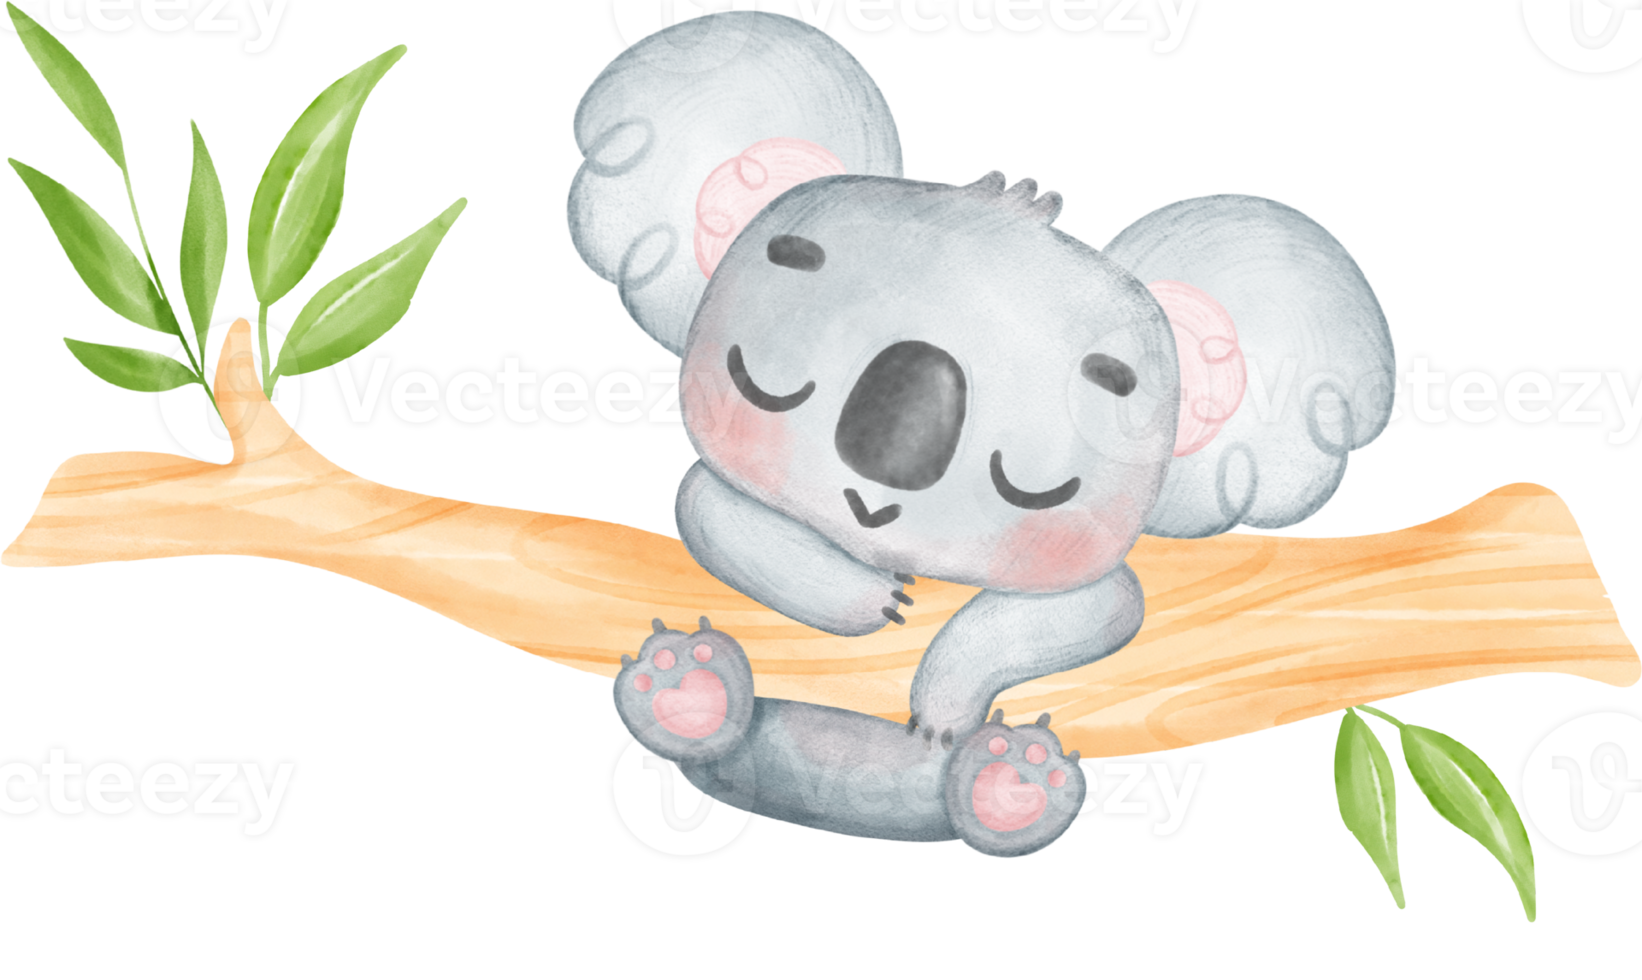 Cute Fuzzy-Eared innocence baby Koala on a tree branch watercolour Illustration png